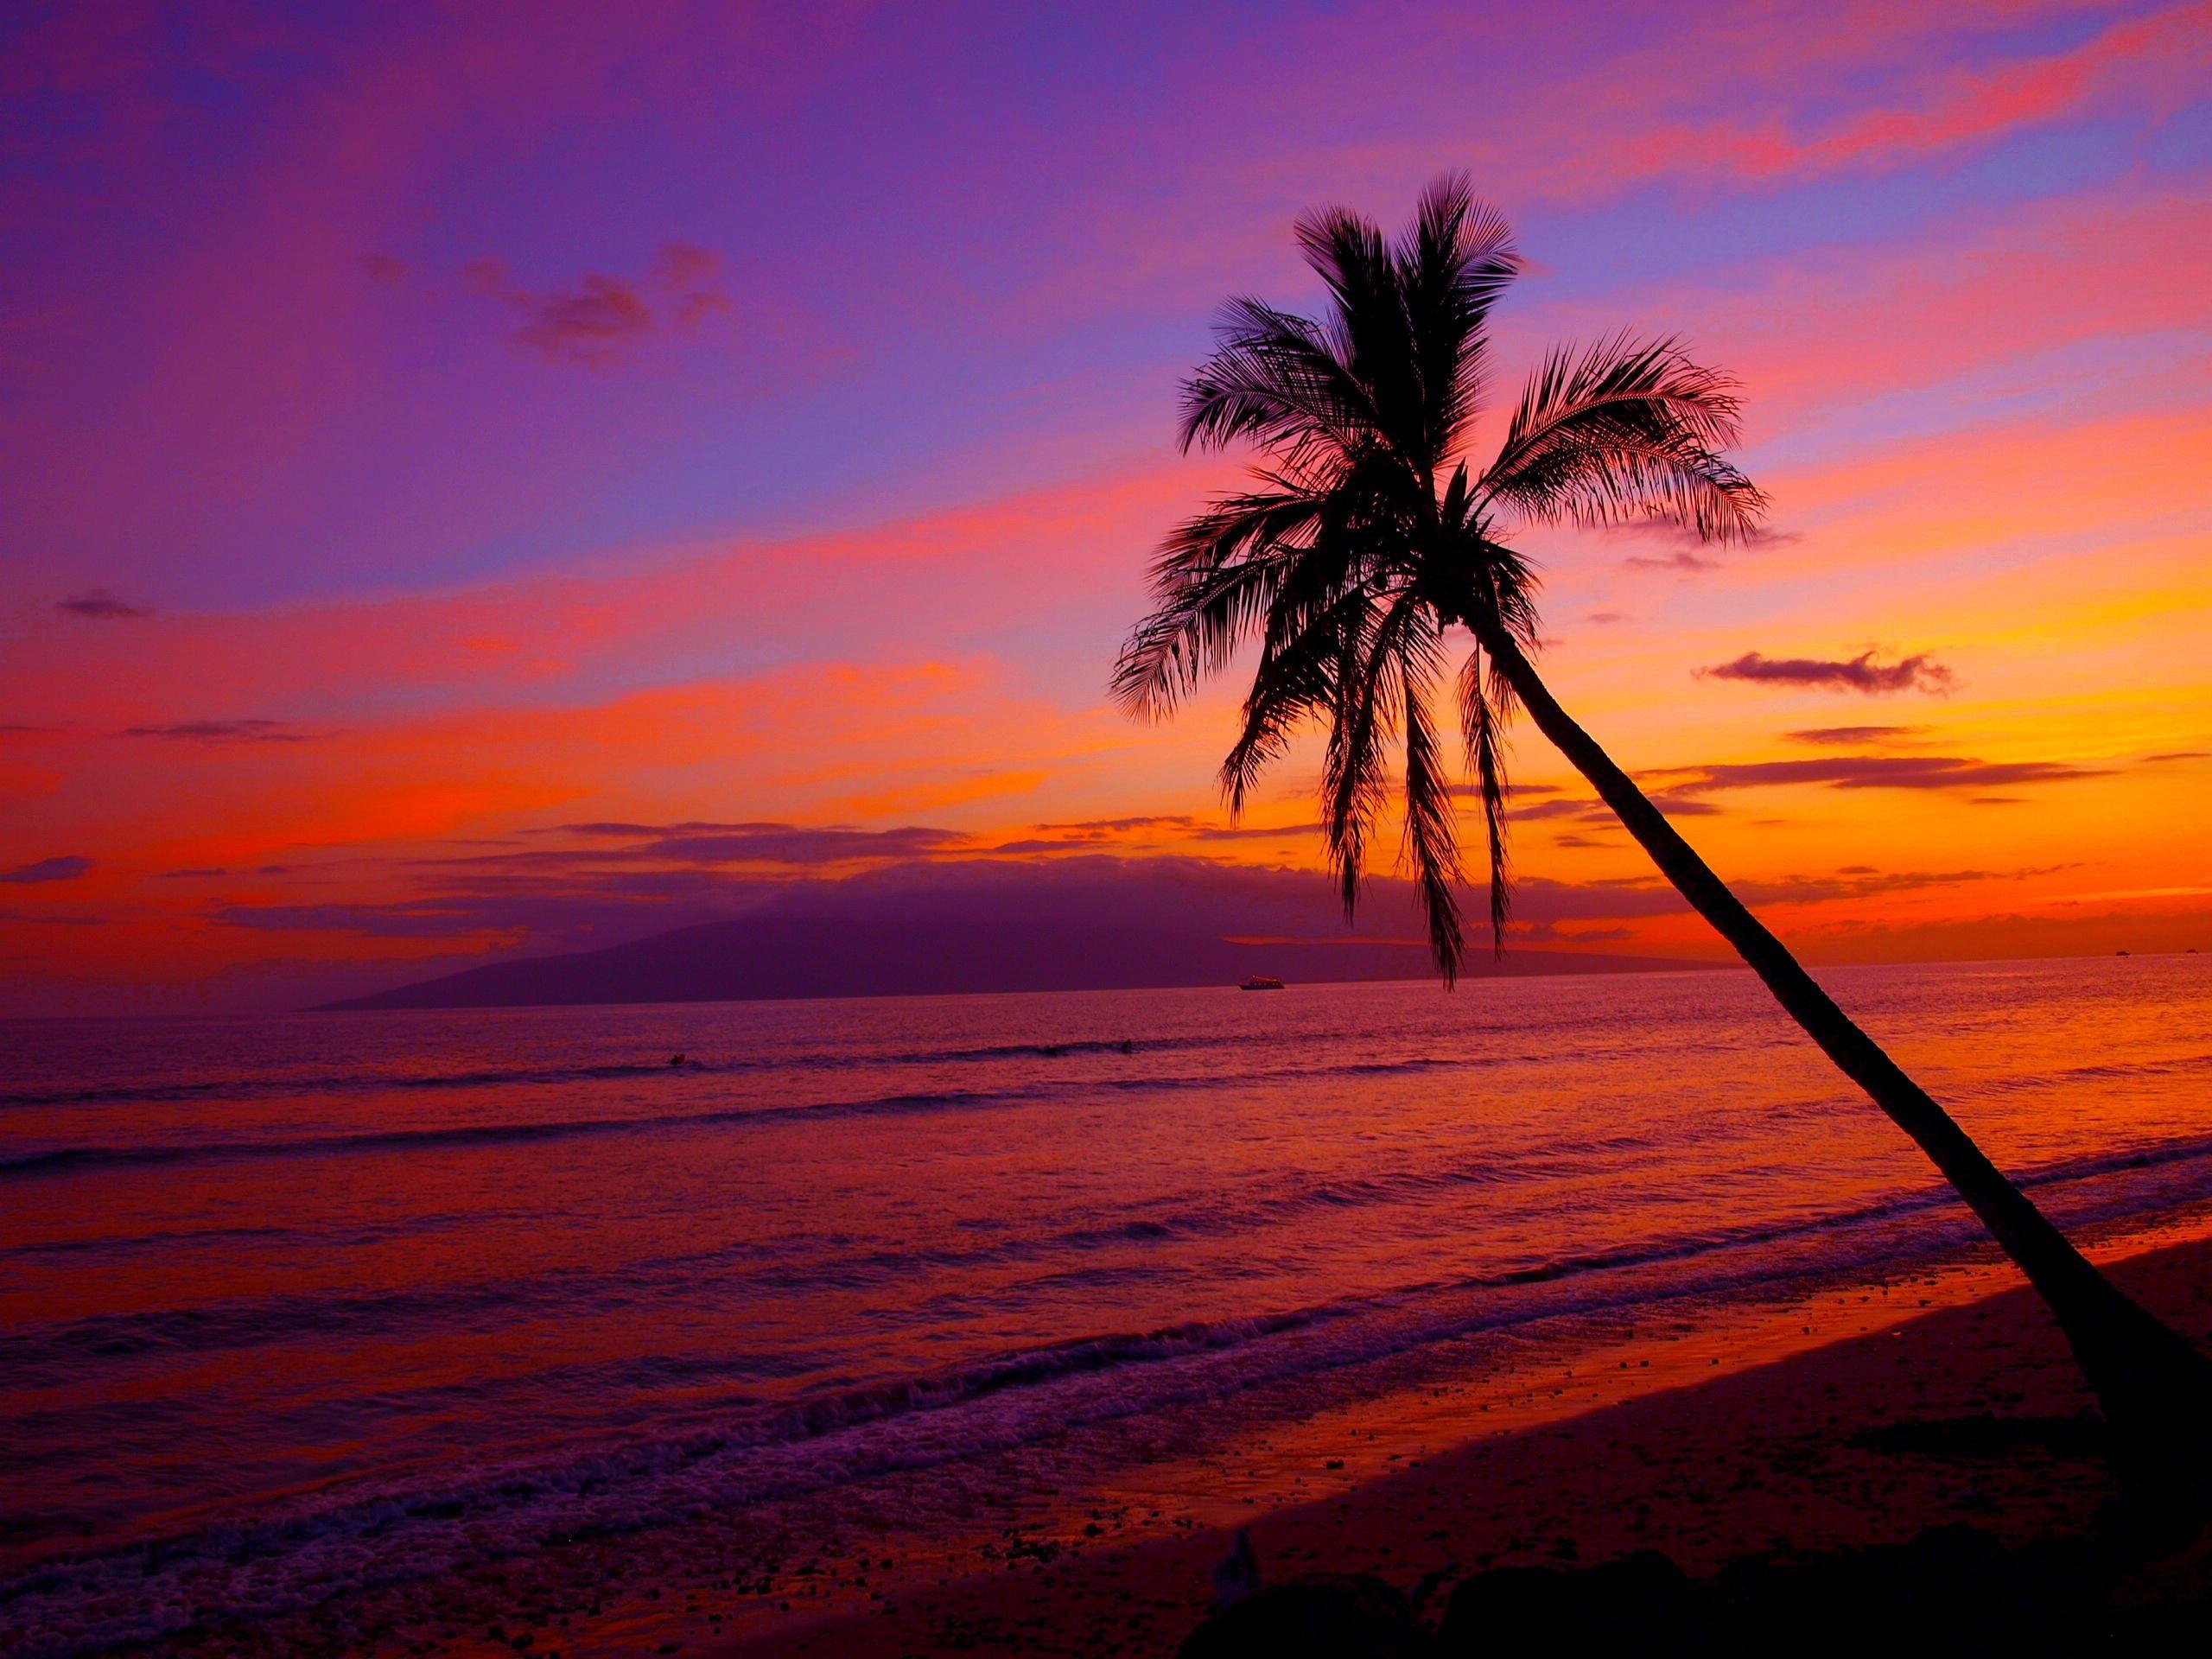 Hawaii Sunset Wallpaper Desktop. Sunset wallpaper, Sunset beach hawaii, Sunsets hawaii